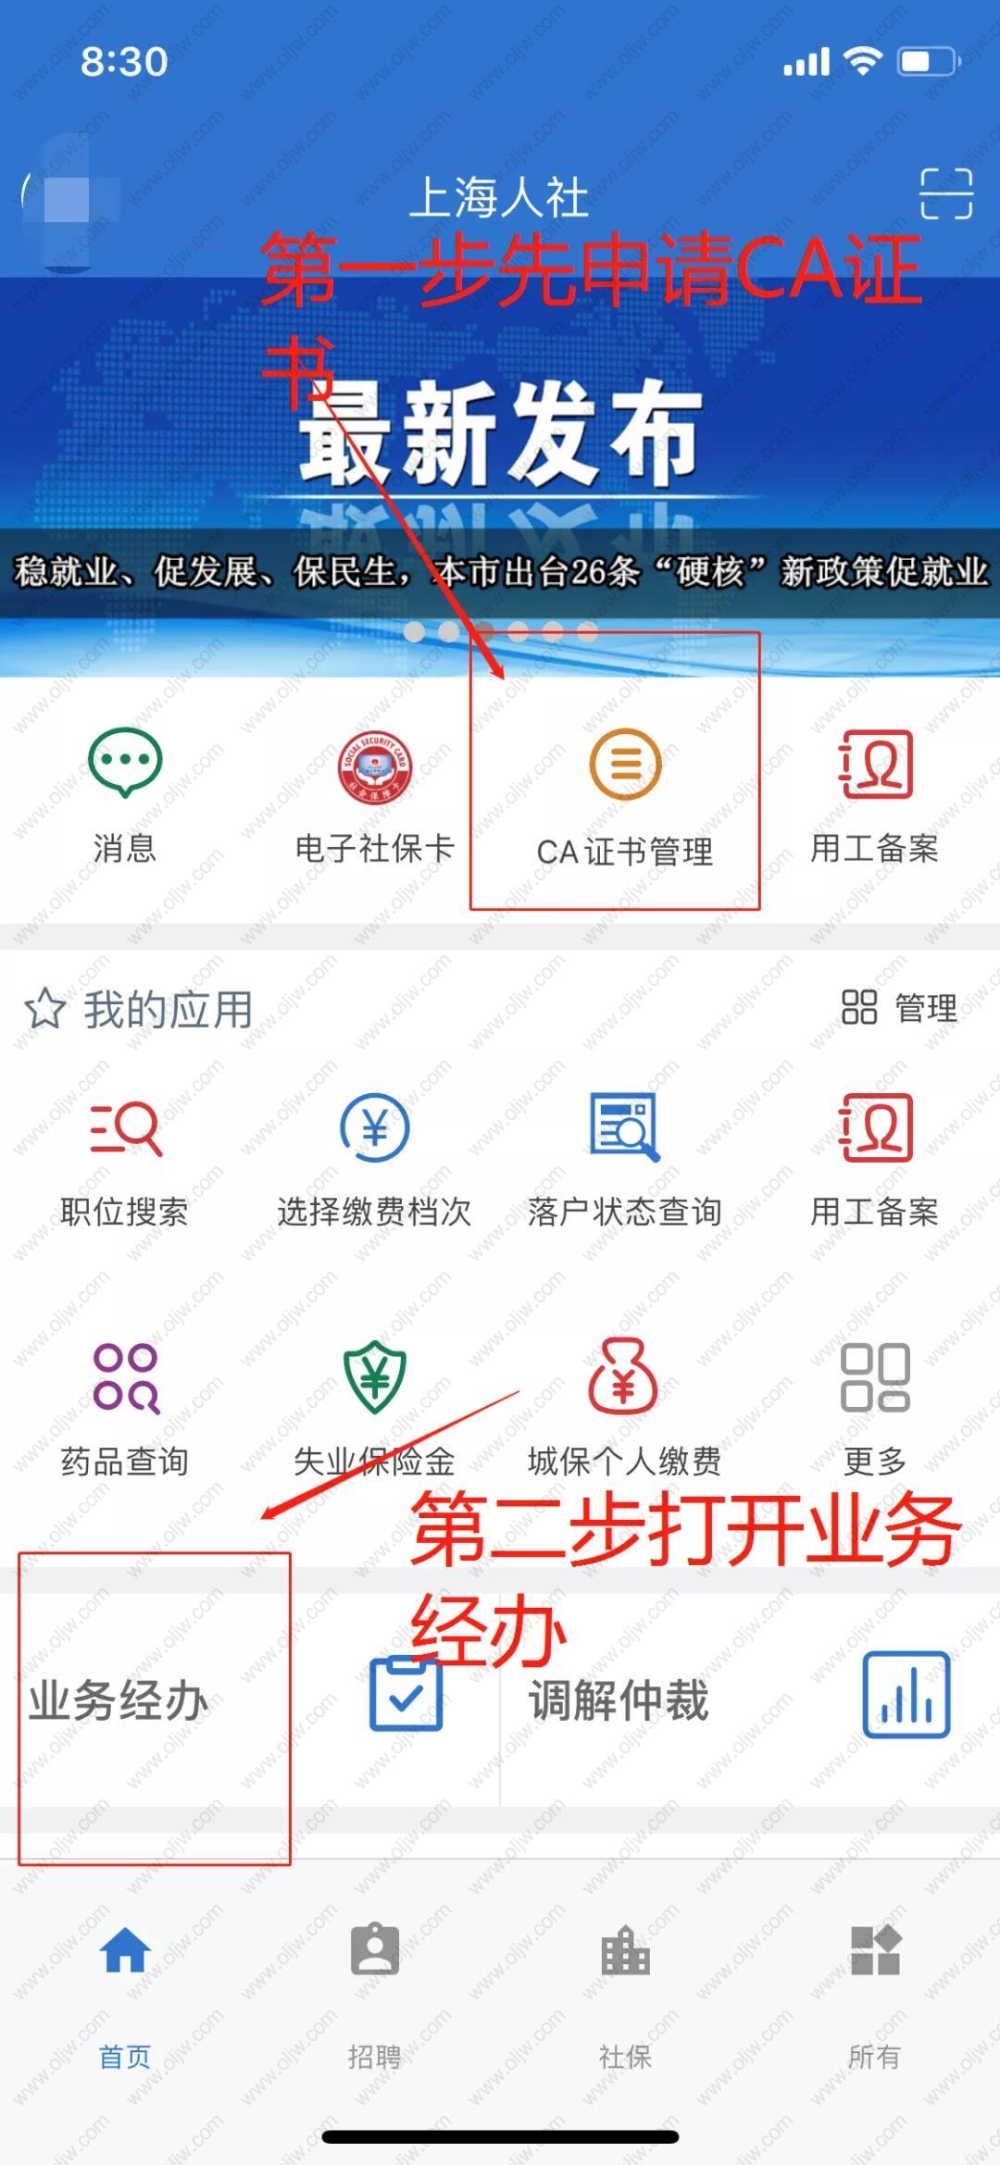 可以在“上海人社”APP查询，首次登陆需要申请CA证书，申请之后打开业务经办